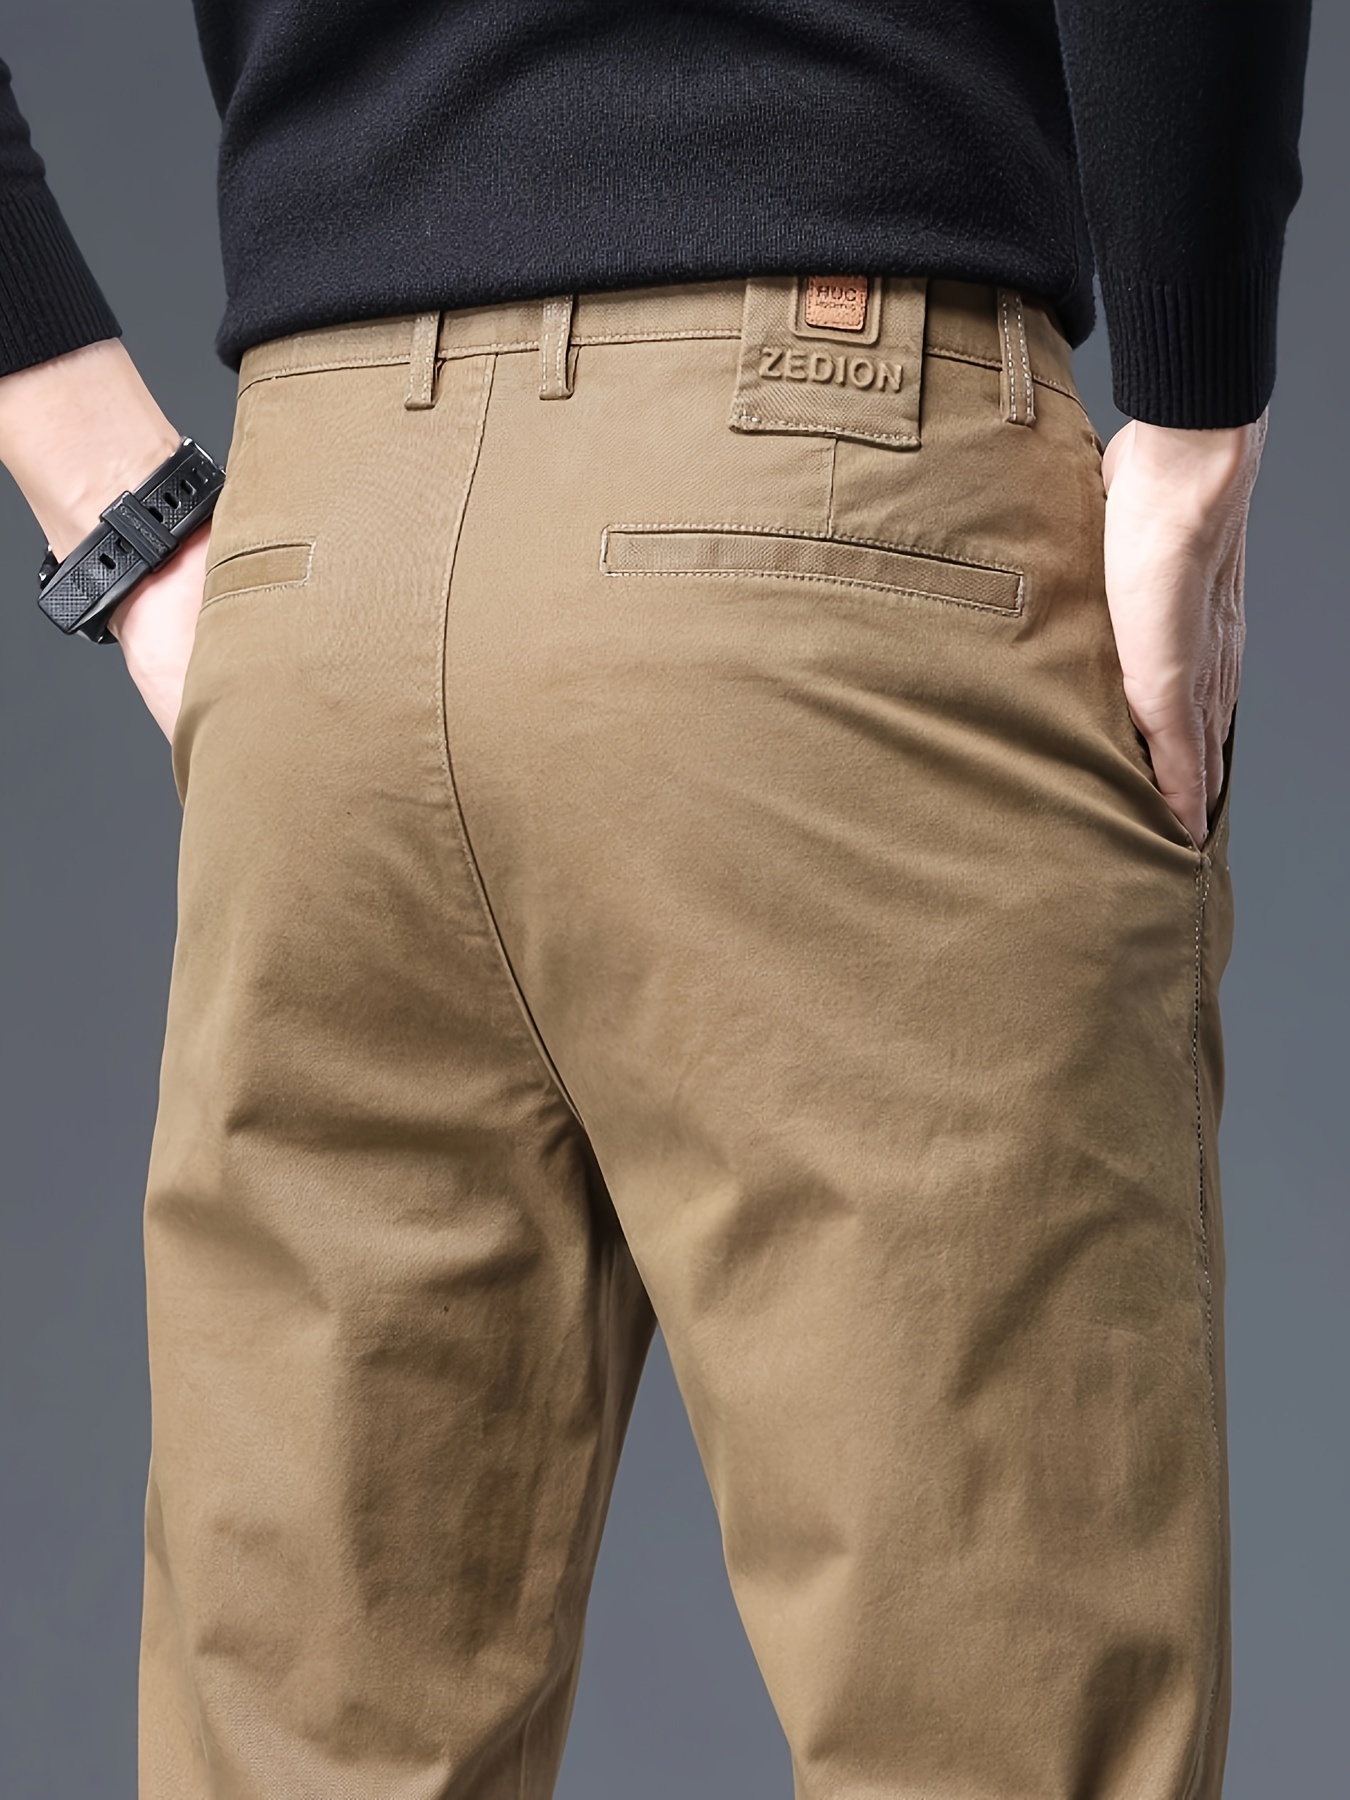 Pantalon chino slim noir - 5 poches - Prix doux Homme/Pantalon, jean,  bermuda, short de bain - Lora